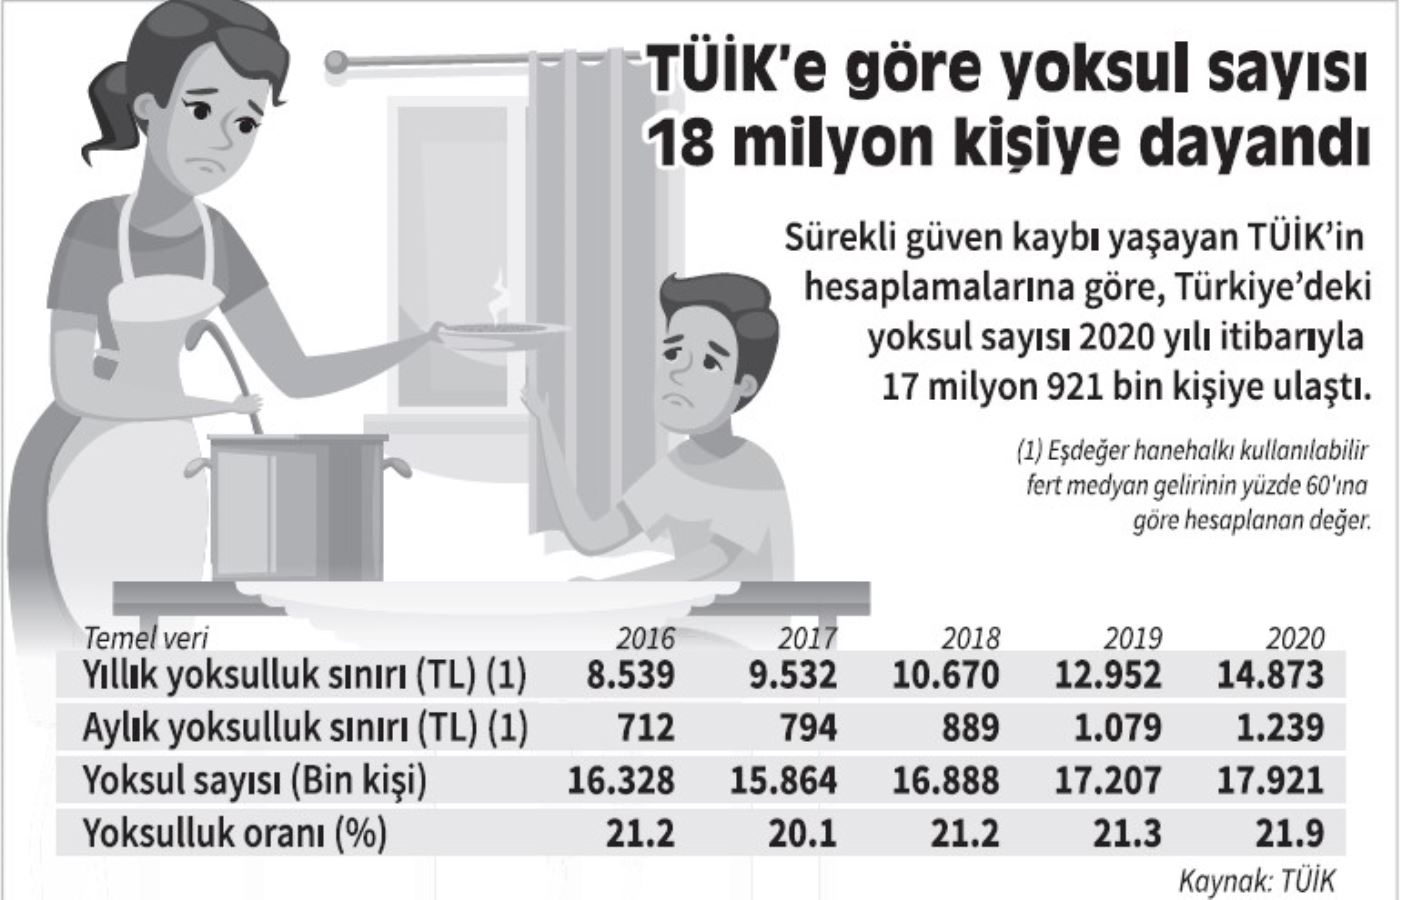 Yoksullaşan Türkiye'de, çalışanların yarısından fazlası asgari ücret alıyor